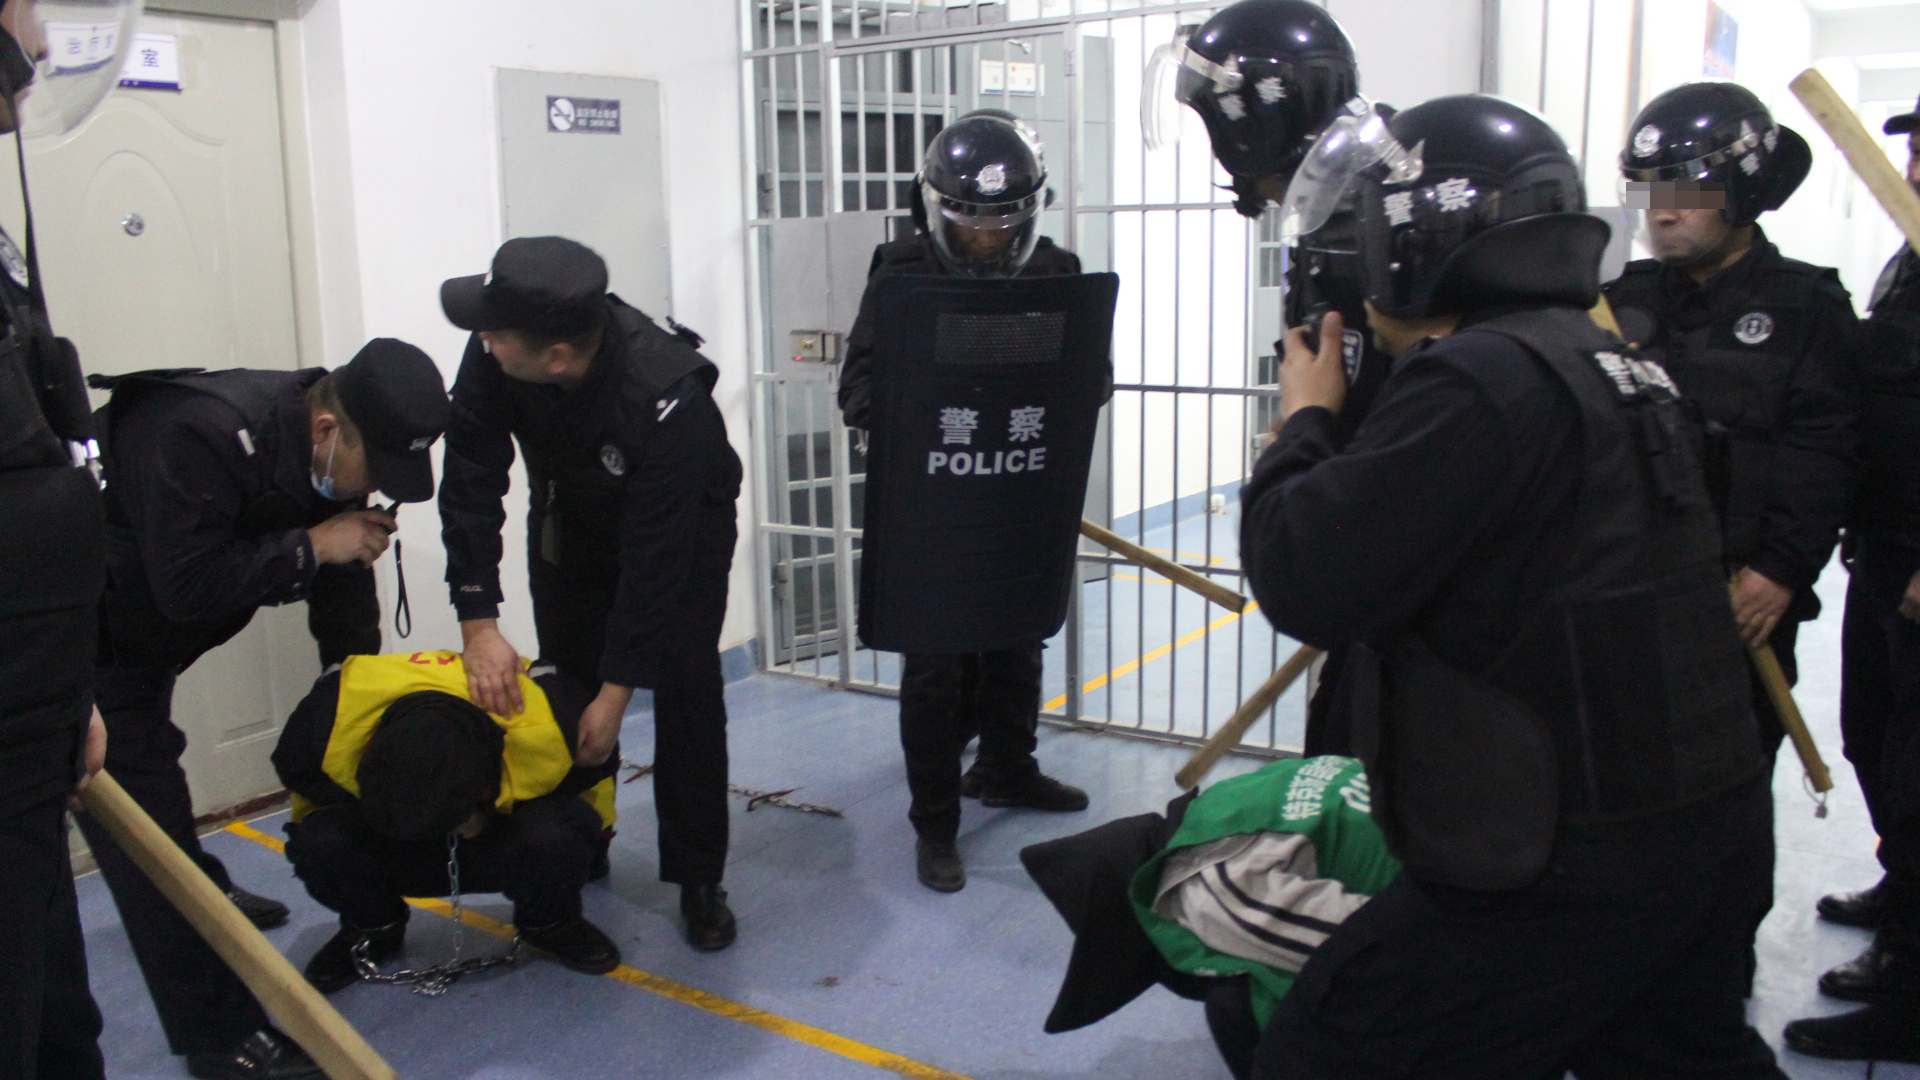 Tahta sopalarla silahlanmış üniformalı insanlar, bir tutukluya kelepçe taktı.  |  Sincan Polis Dosyaları